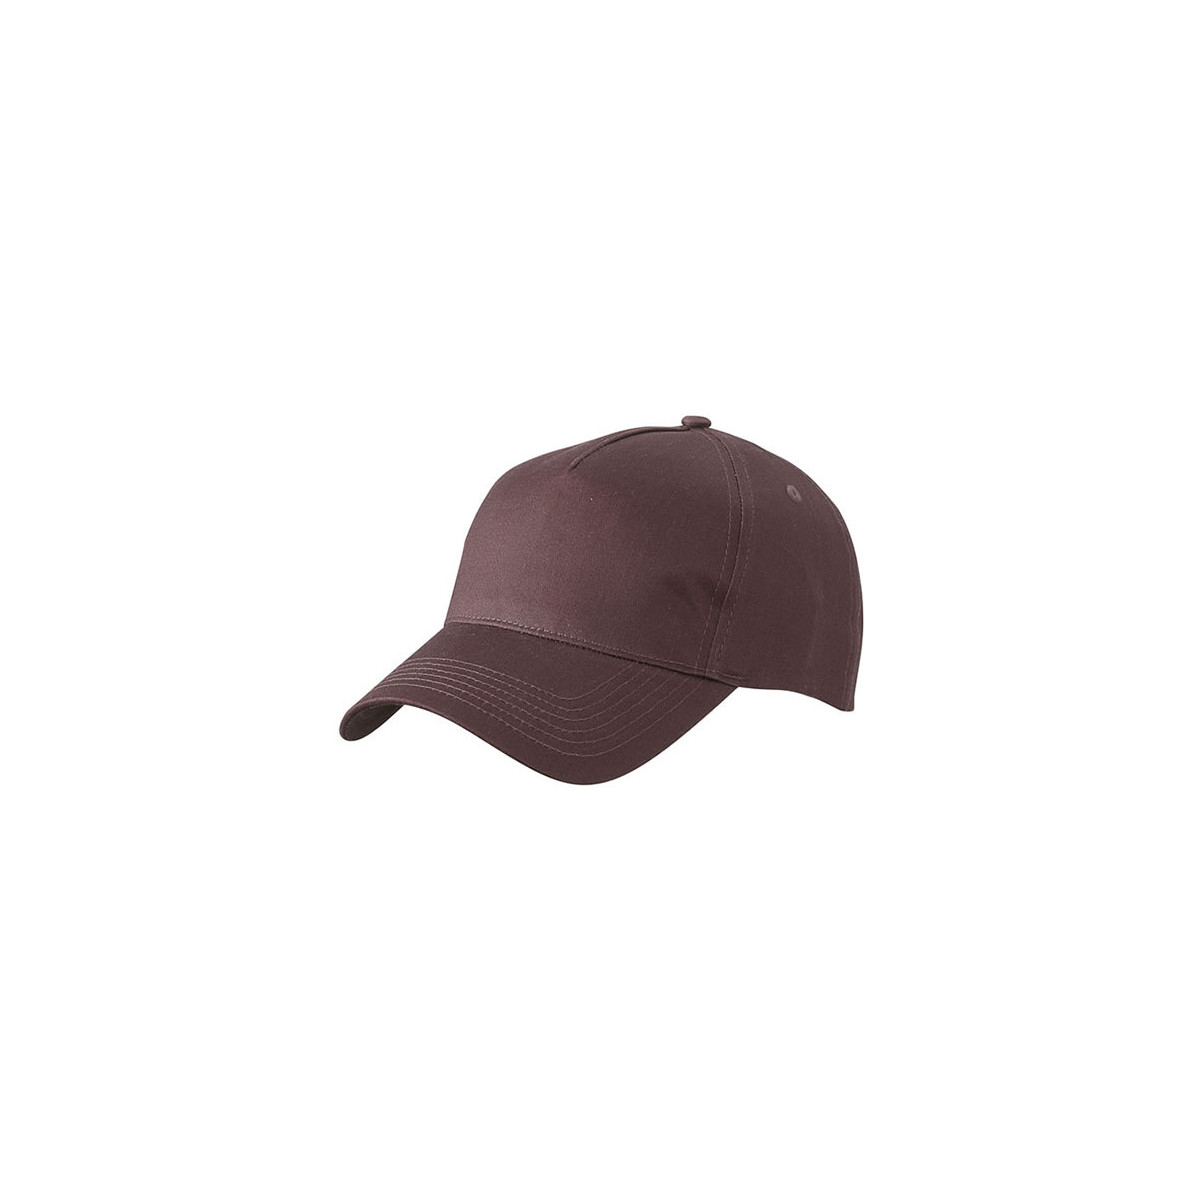 czapki-bhp-z-daszkiem - Czapka z daszkiem brązowa dark brown pięciopanelowa